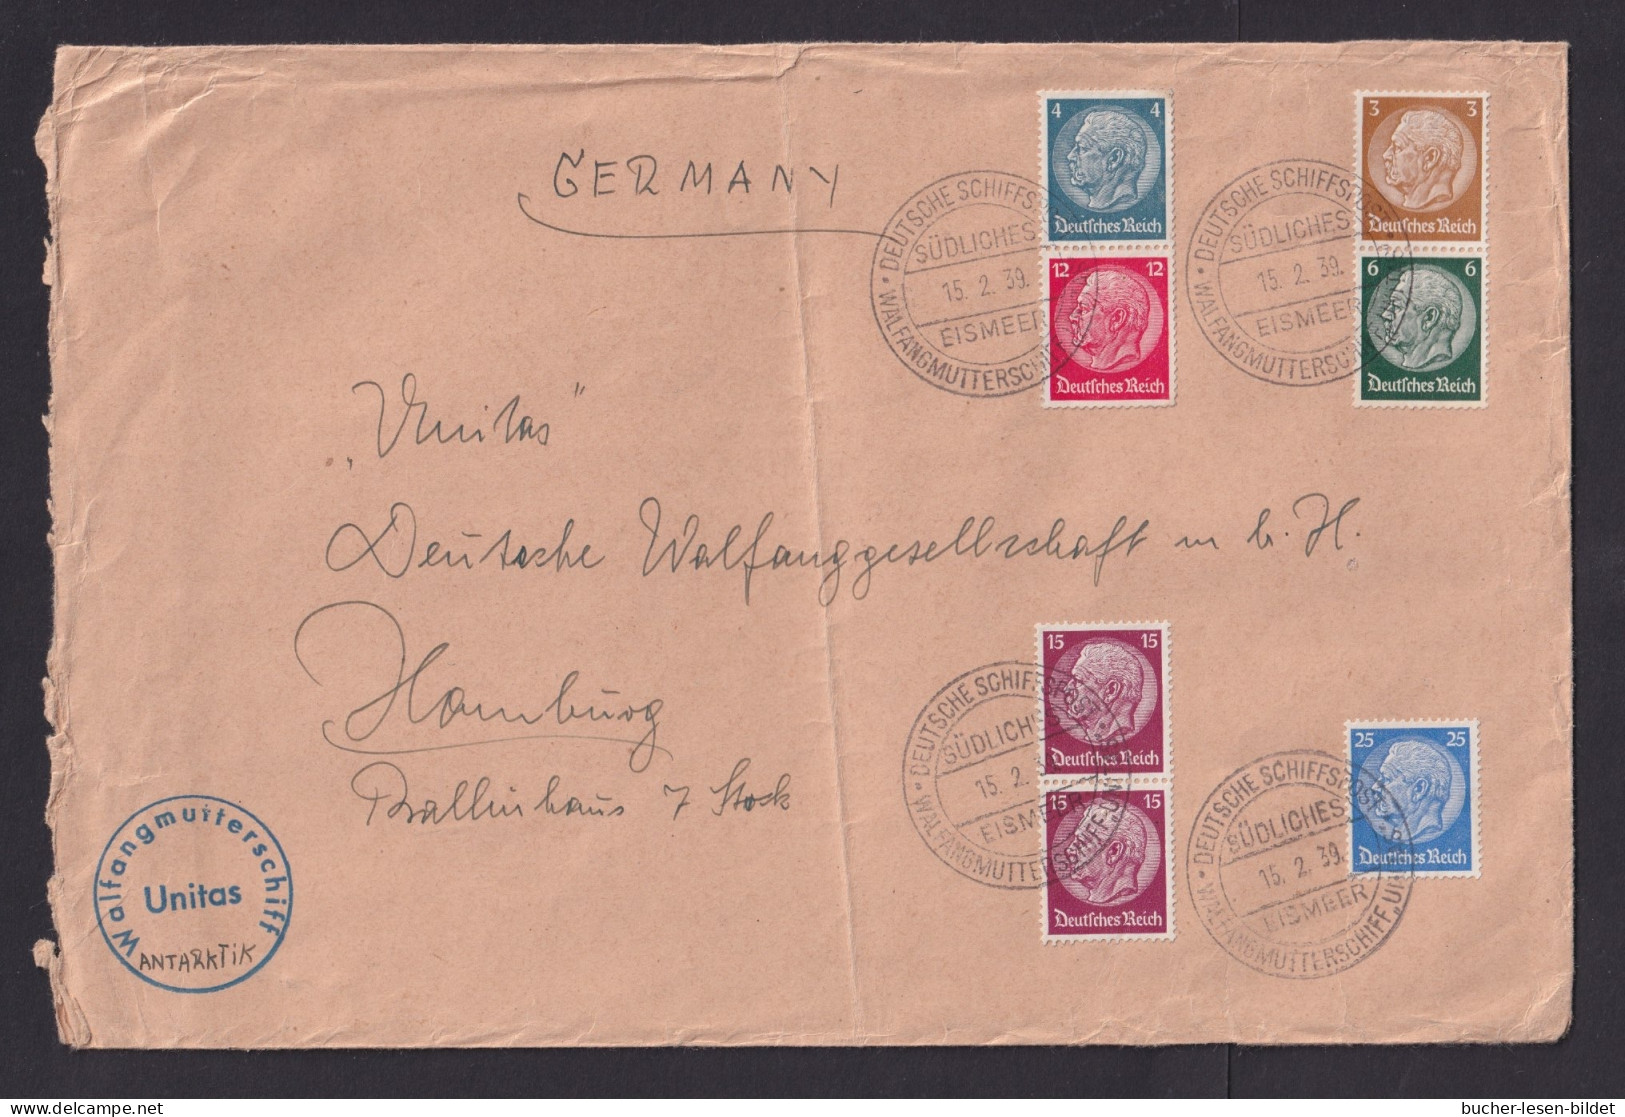 1939 - Bedarfsbrief Mit Schiffstempel "Walfangflotte Südliches Eismeer Unitas" - SEHR  SELTEN - Baleines